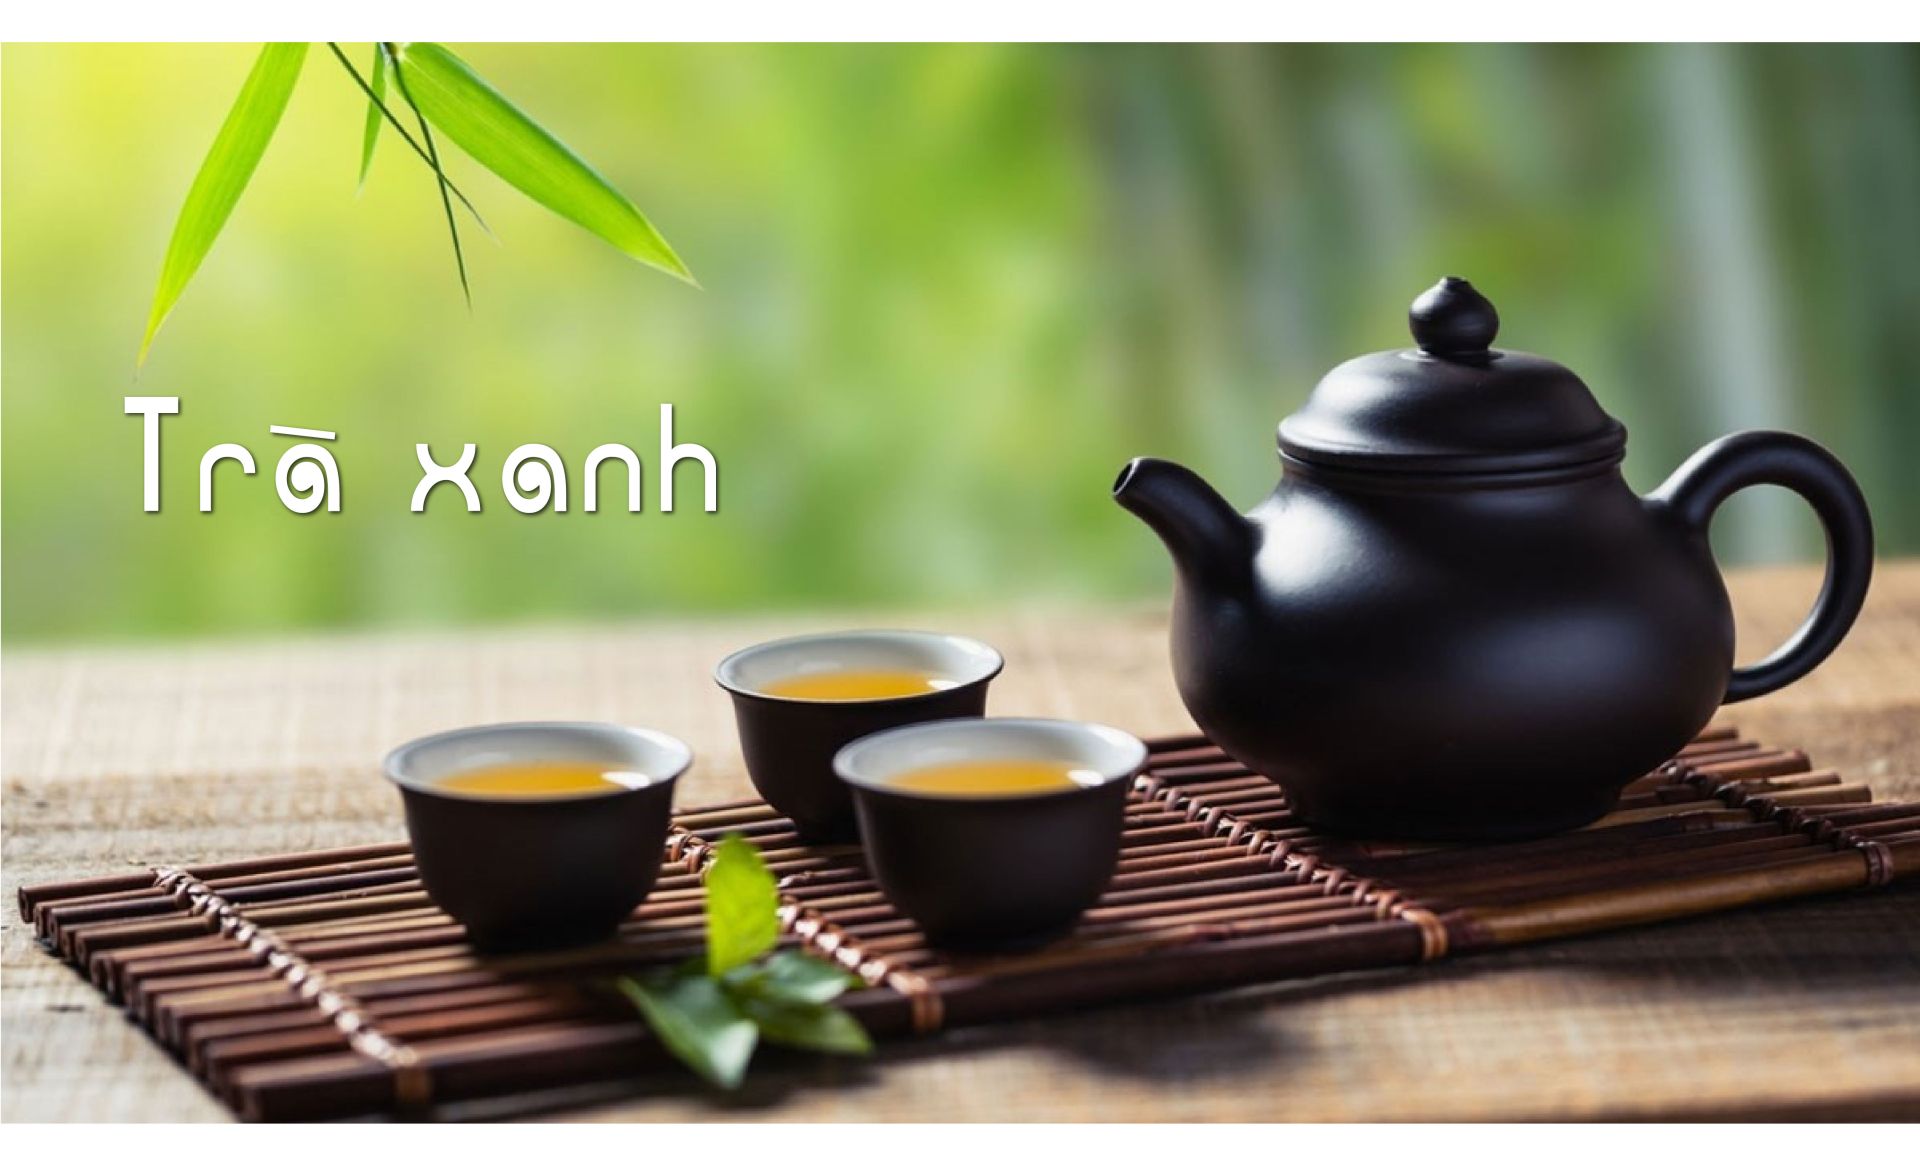 Không có gì giúp bạn bình tĩnh tâm trí hơn bằng cách uống một tách trà xanh để khởi động ngày mới. Trong thực tế, trà xanh được biết là có tác dụng nhanh chóng giảm cảm giác lo lắng, khó chịu.